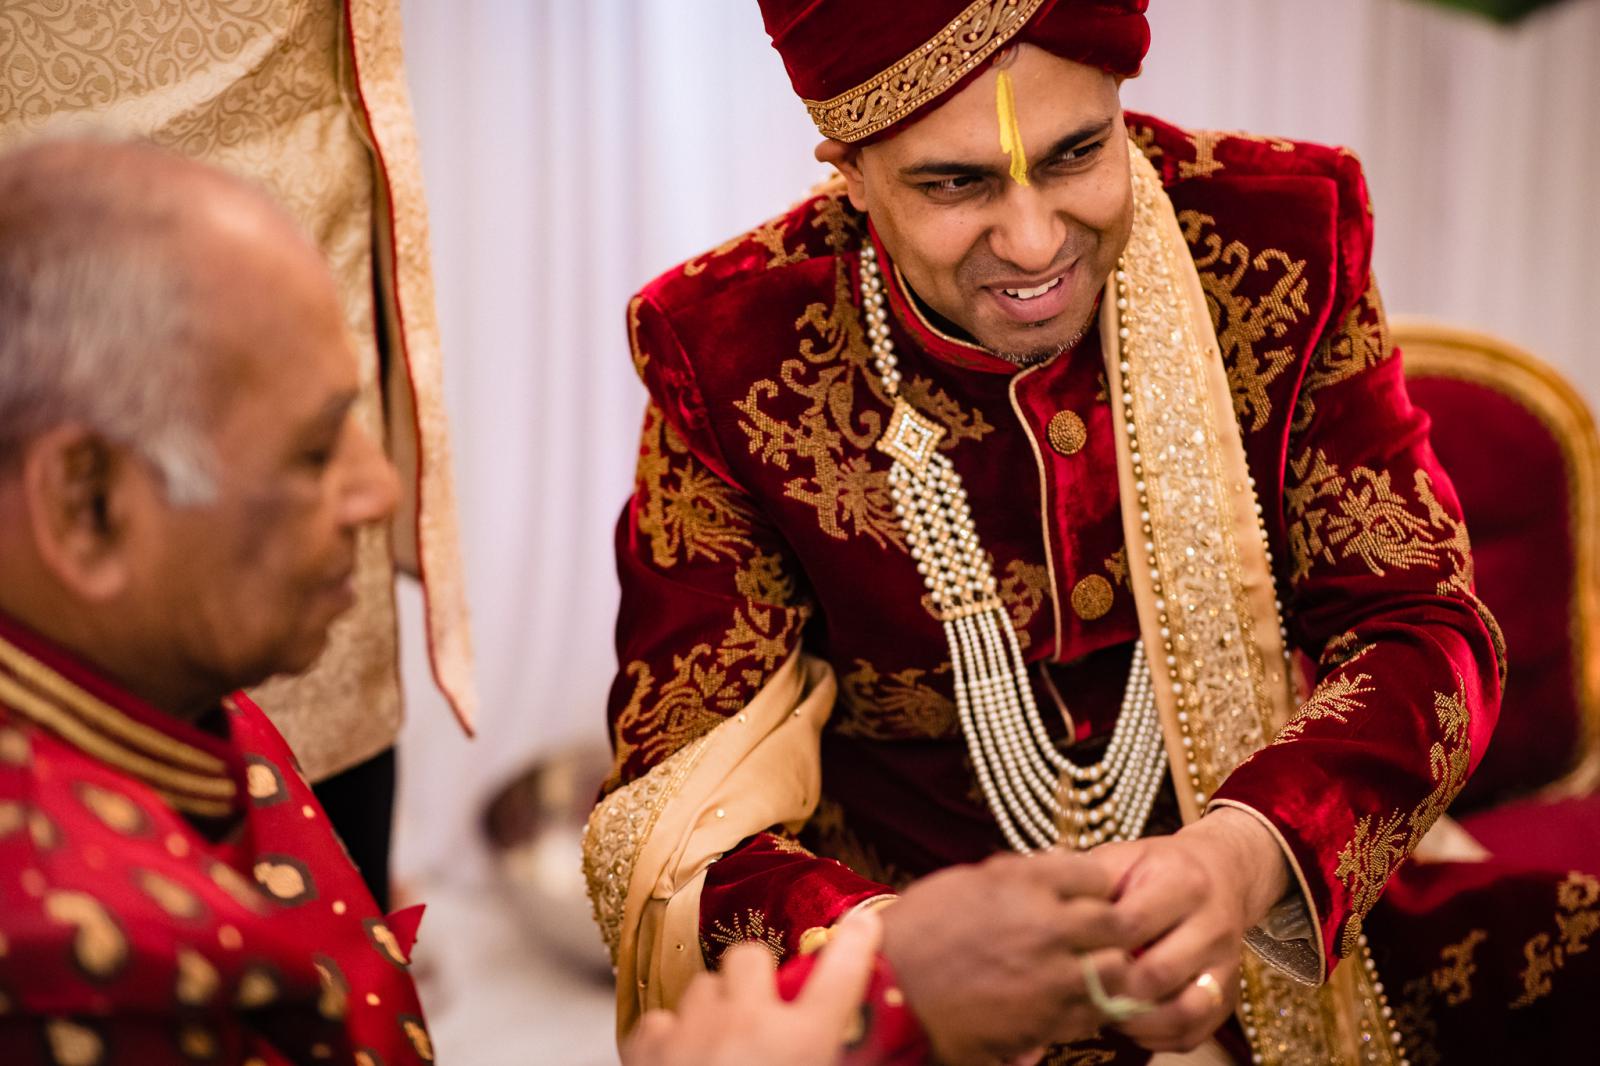 bruidegom ziet bruid voor het eerst tijdens Trouwceremonie hindoestaanse bruiloft door trouwfotograaf rey events almere